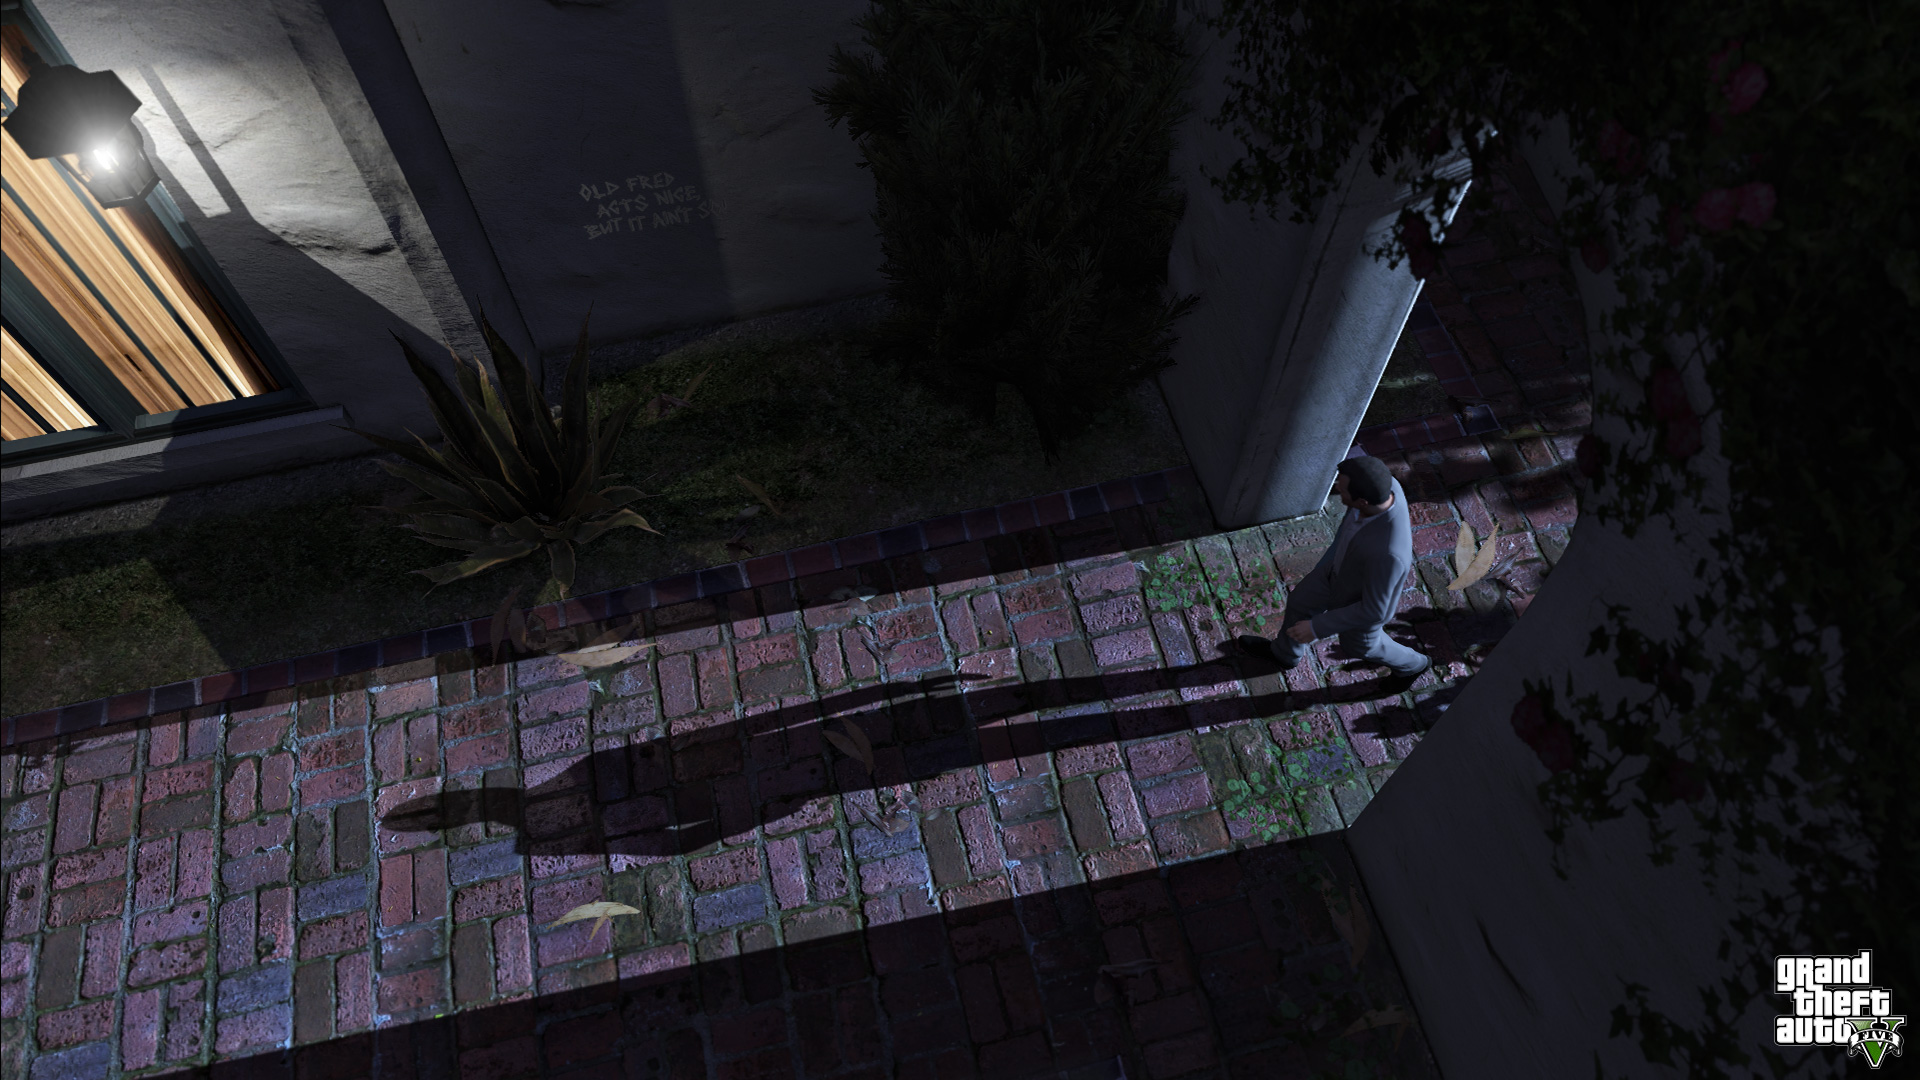 Immagine pubblicata in relazione al seguente contenuto: Rockstar pubblica nuove info e screenshots di Grand Theft Auto V | Nome immagine: news21805_Grand-Theft-Auto-V_3.jpg